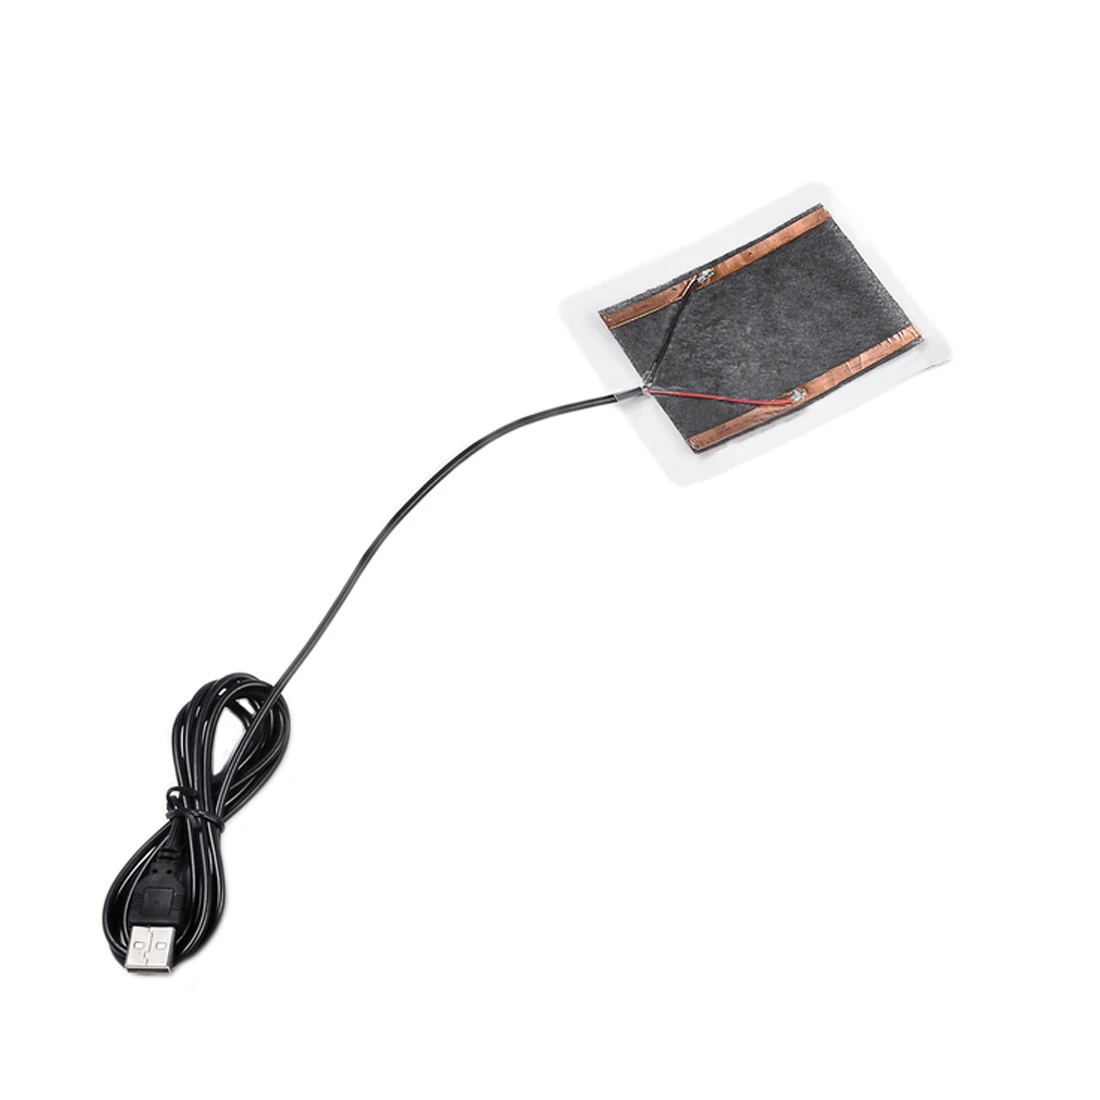 Centechia хорошие продажи 1 шт. зимние портативные теплые пластины USB нагреватель для мыши коврик обувь Golves